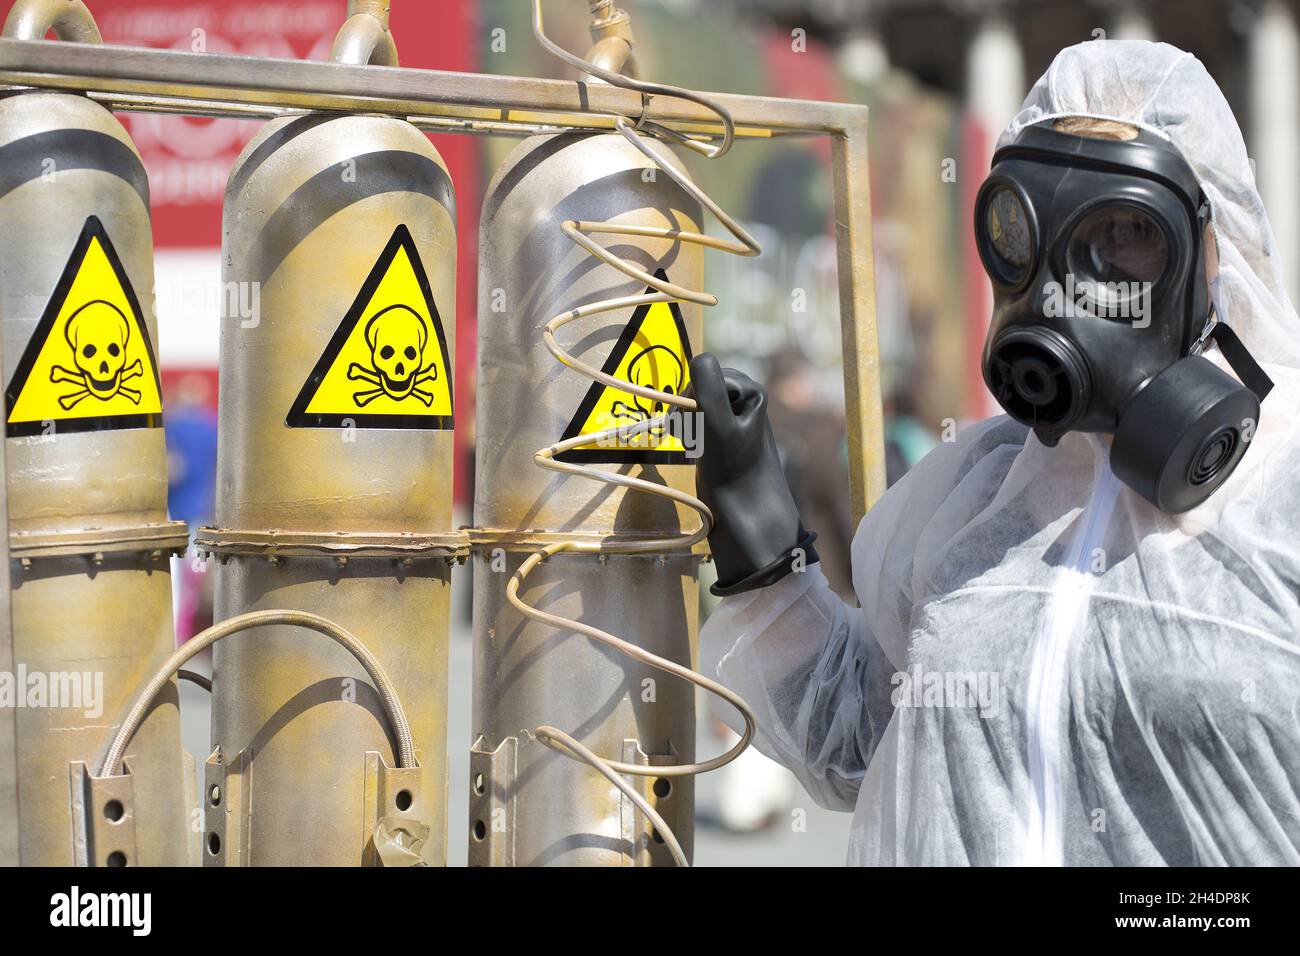 Un membro della PETA protesta a Trafalgar Square, nel centro di Londra, contro i test del Ministero della Difesa sugli animali. L'azione viene giorni prima della Giornata Mondiale degli animali nei Laboratori il 23 aprile, dopo che i documenti hanno rivelato decine di scimmie infettate con il virus Ebola e uccise. Foto Stock